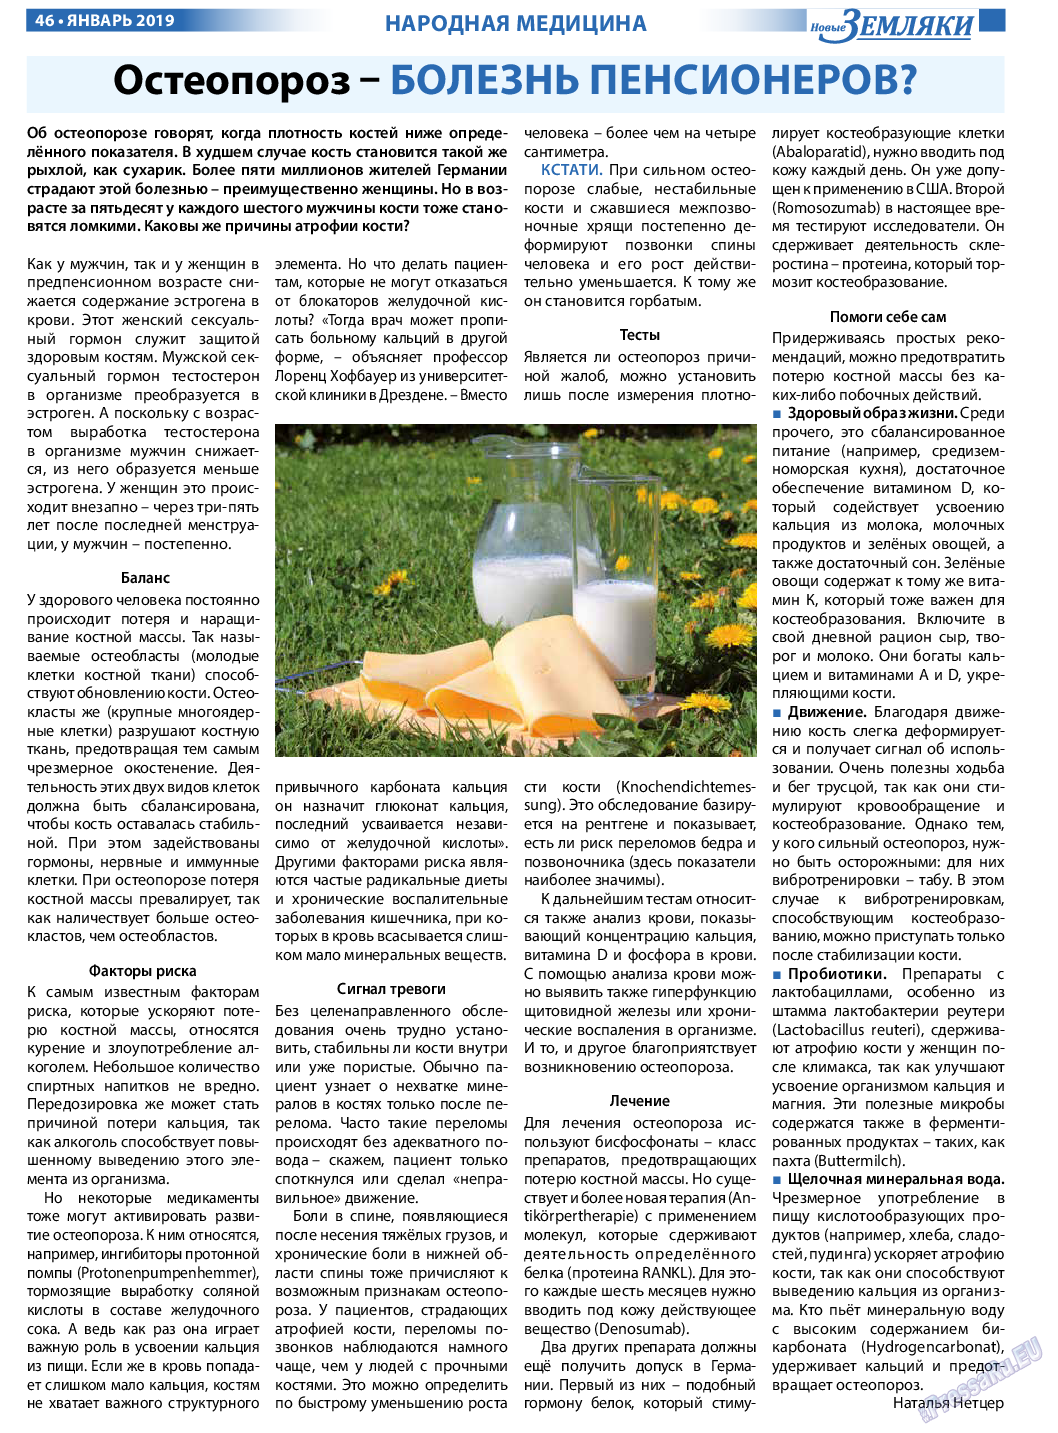 Новые Земляки, газета. 2019 №1 стр.46